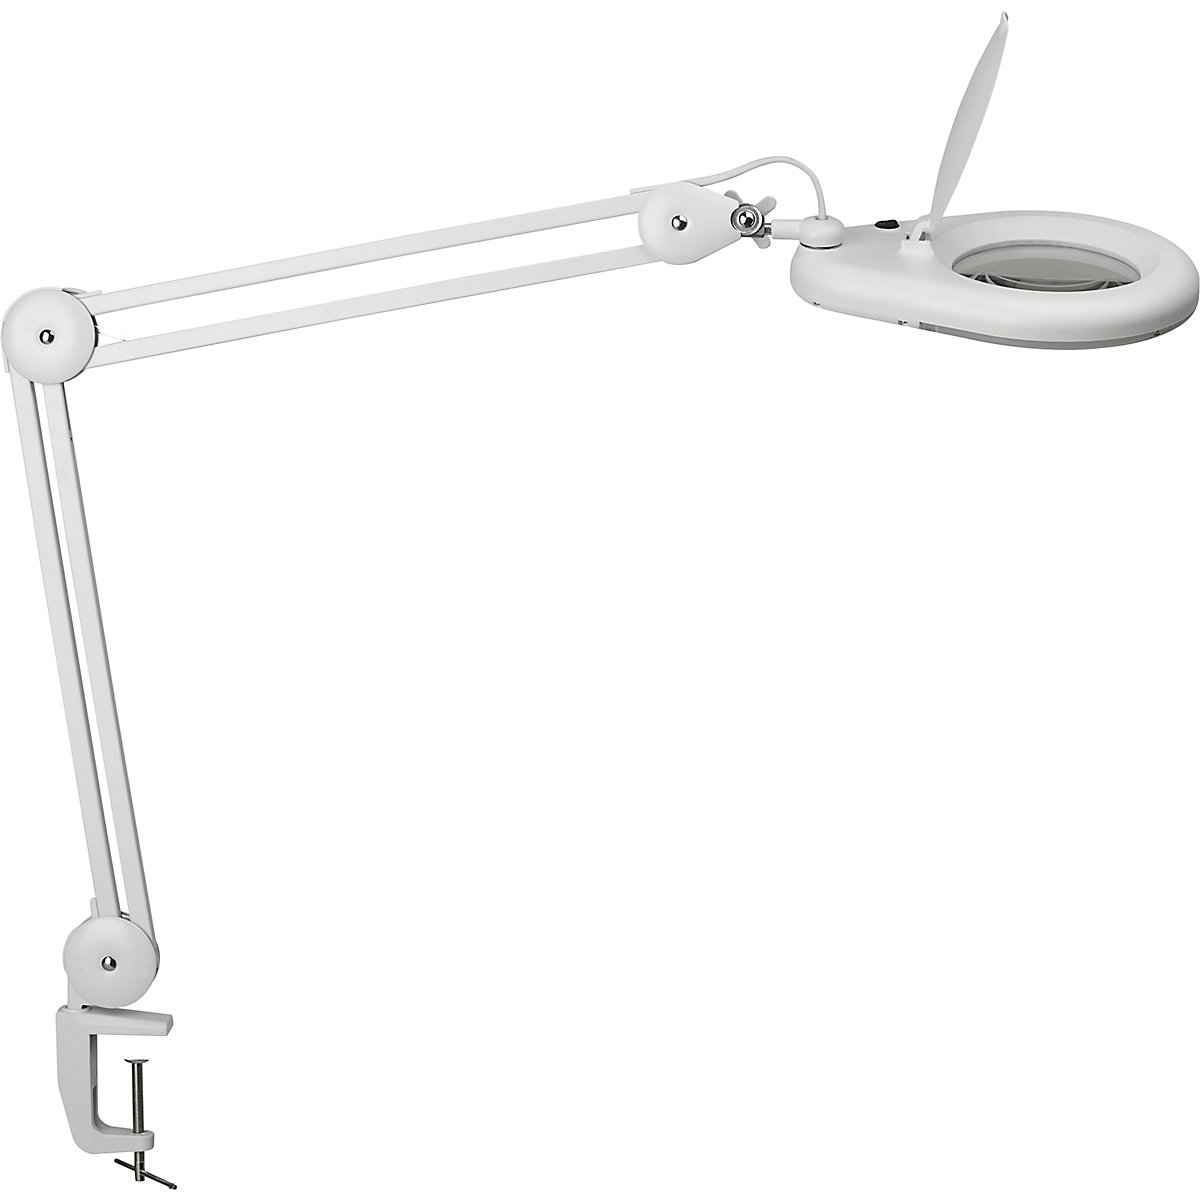 MAULviso LED-es nagyítós lámpa – MAUL, karhosszúság 410 mm, asztalszorítóval, fehér-5